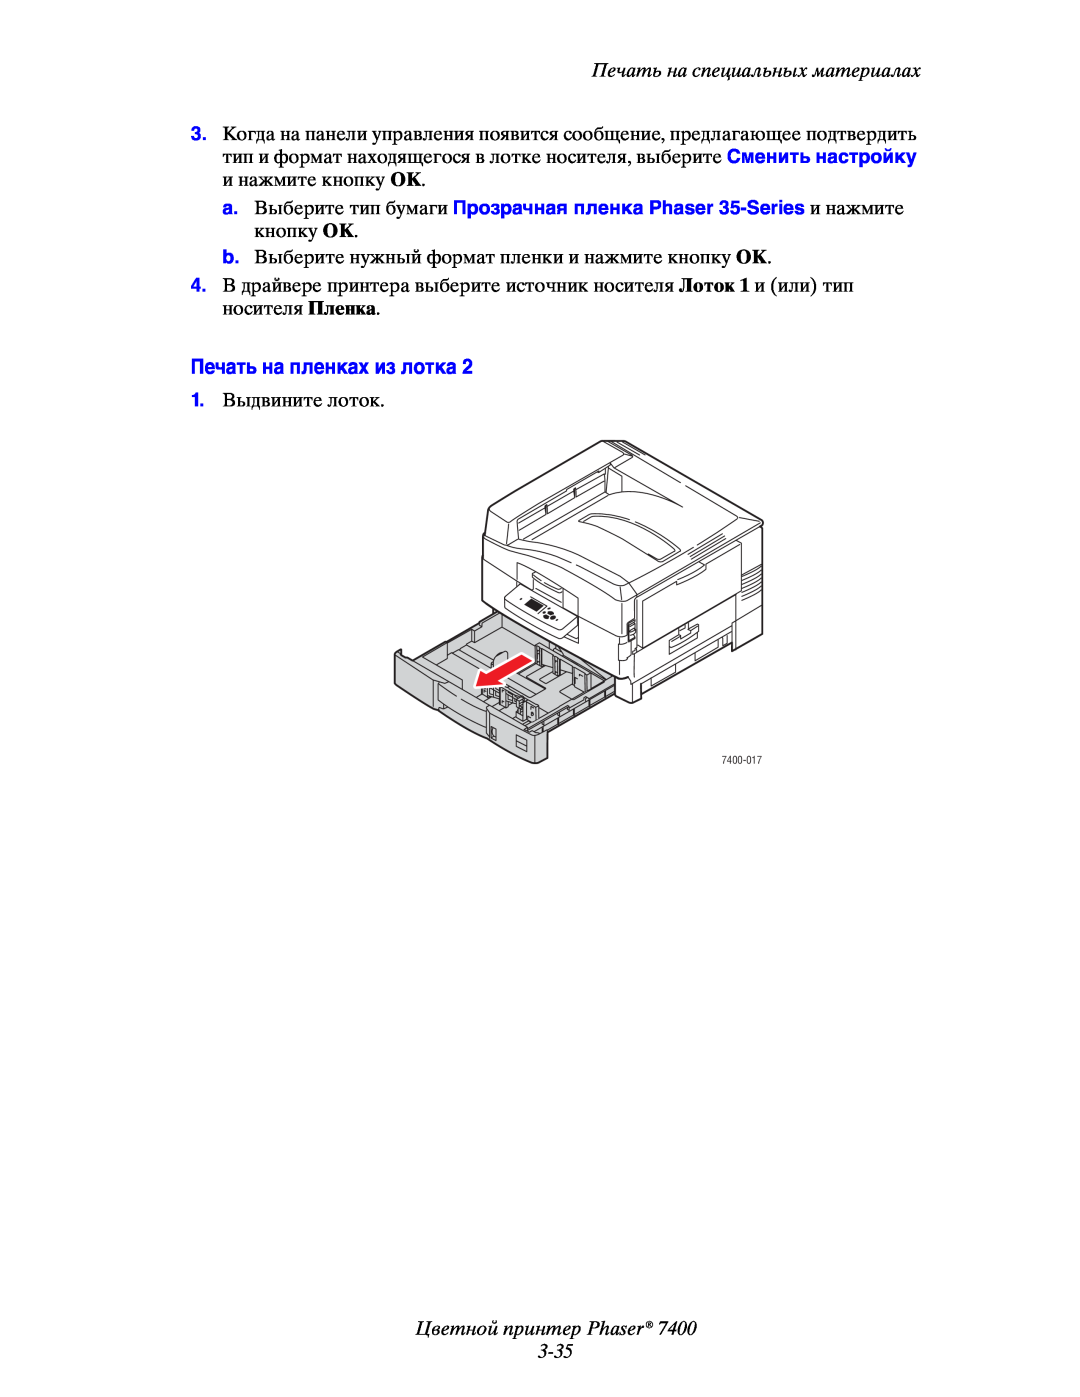 Xerox 7400 manual Печать на пленках из лотка, Цветной принтер Phaser 3-35, Печать на специальных материалах 